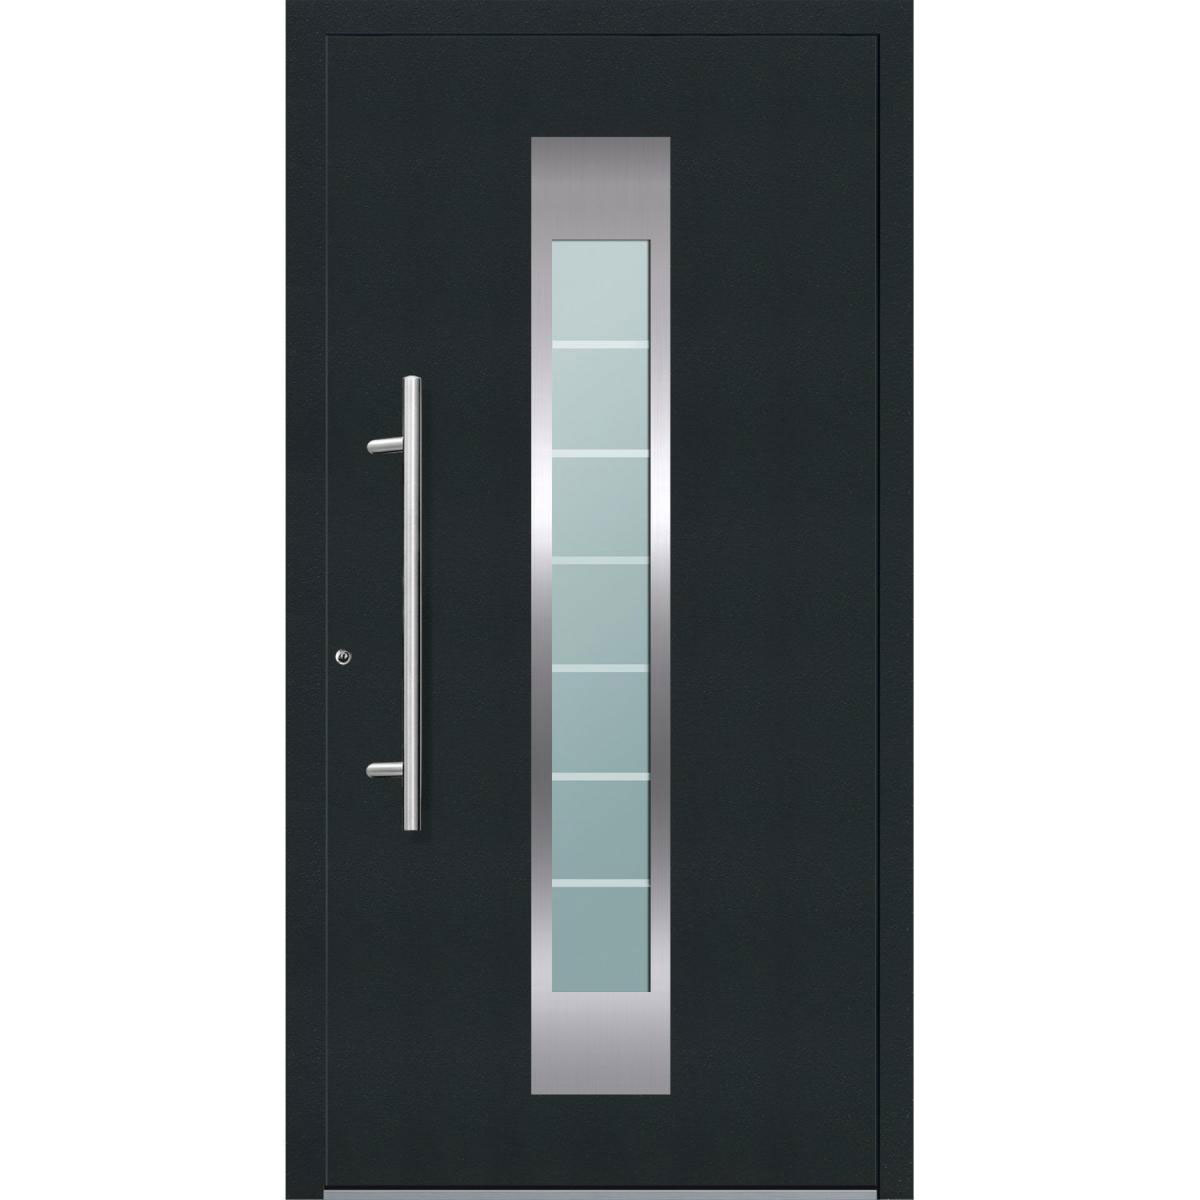 Aluminium Sicherheits-Haustür „Florenz Exklusiv“, 75mm, anthrazit, 100x210 cm, Anschlag links, inkl. Griffset